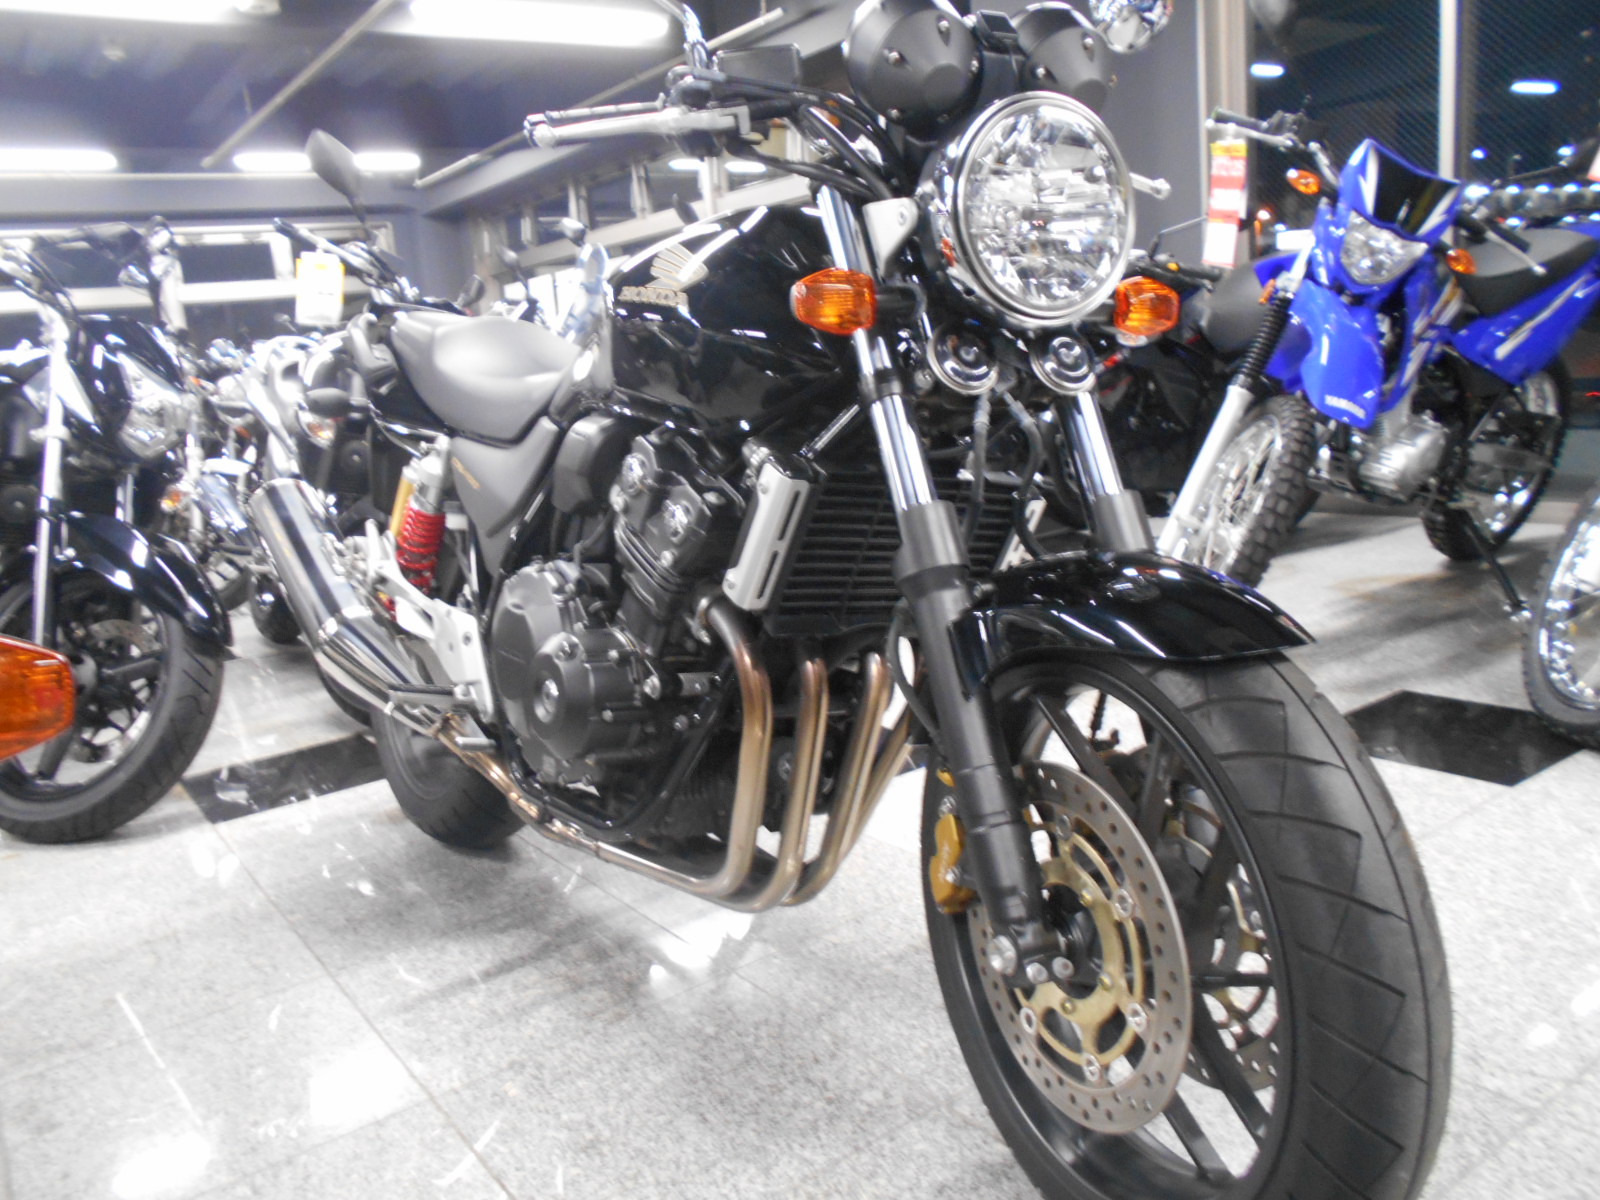 特選中古車 Cb400sf 16年モデル 最新情報 U Media ユーメディア 中古バイク 新車バイク探しの決定版 神奈川 東京でバイク探すならユーメディア